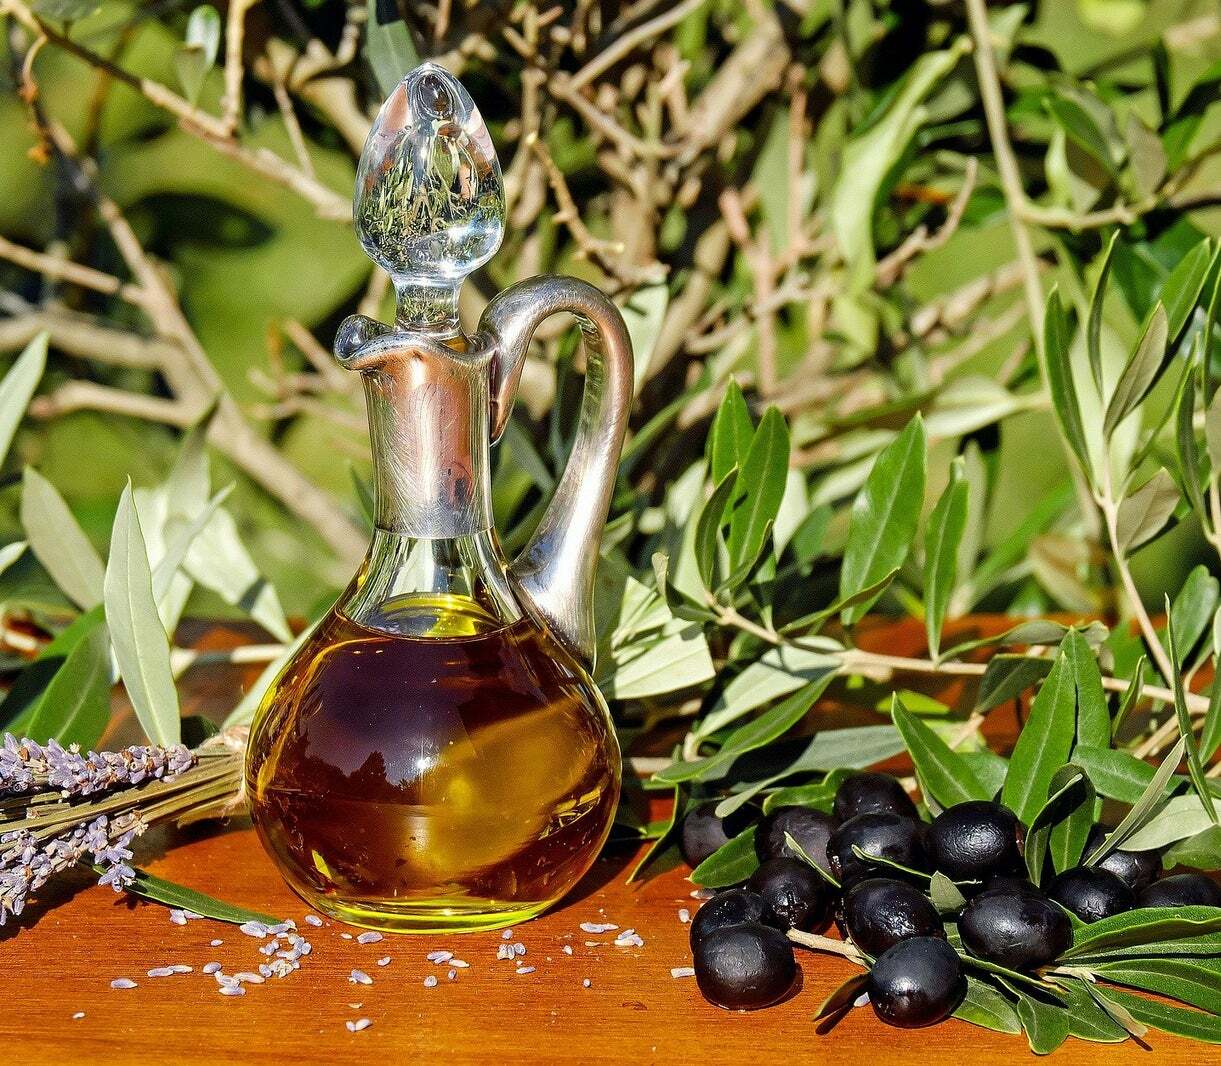 Aceite de oliva suave (1 l) bargalló